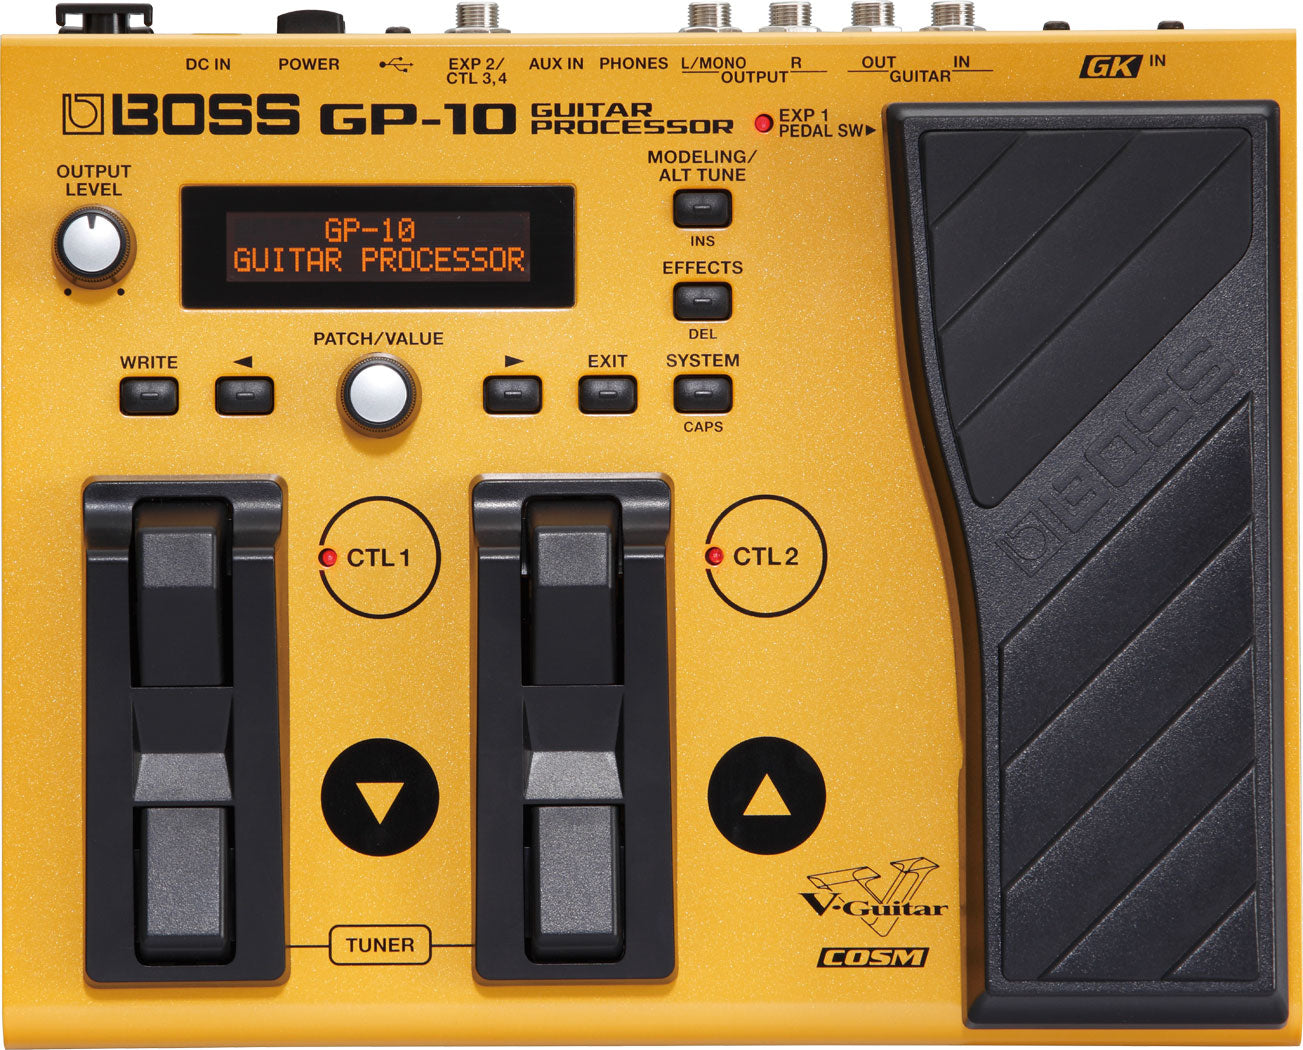 BOSS GP-10 Guitar Processor 結他效果器